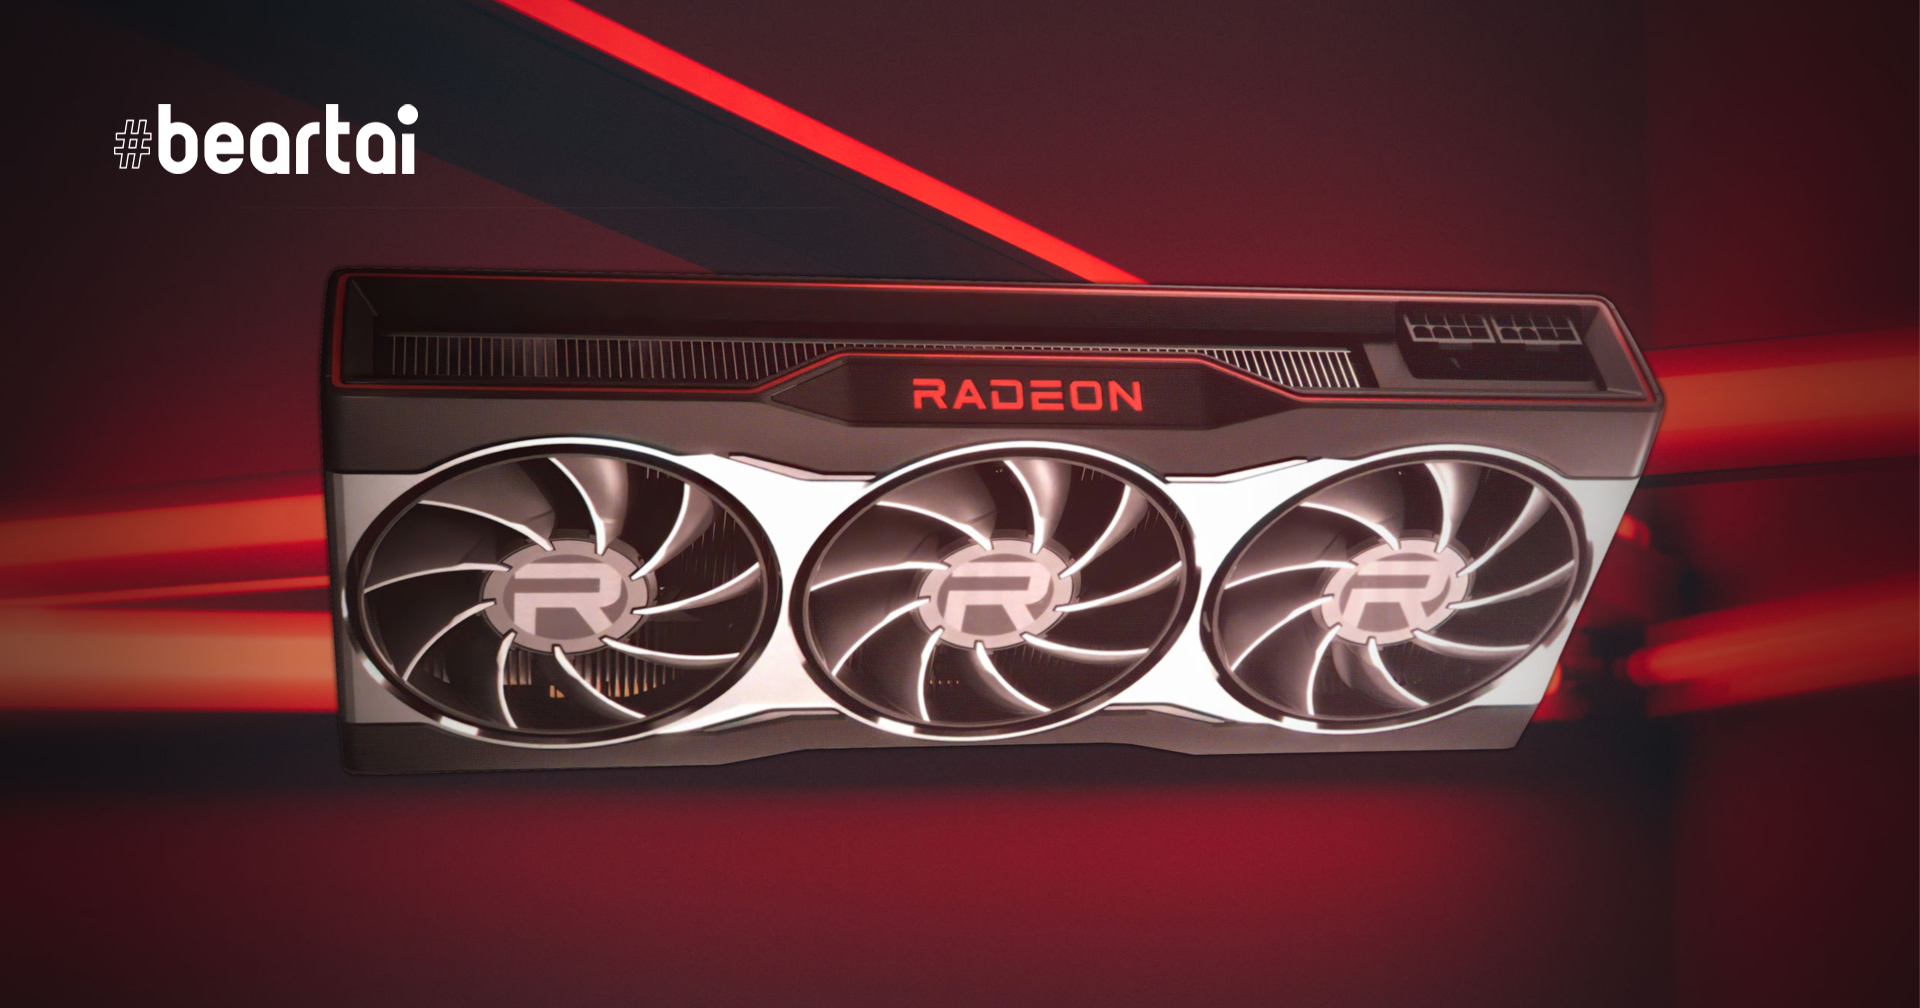 เปิดตัว AMD Radeon RX 6000 Series การ์ดจอสถาปัตยกรรม RDNA 2 สำหรับคอเกมเมอร์สุดแรง!